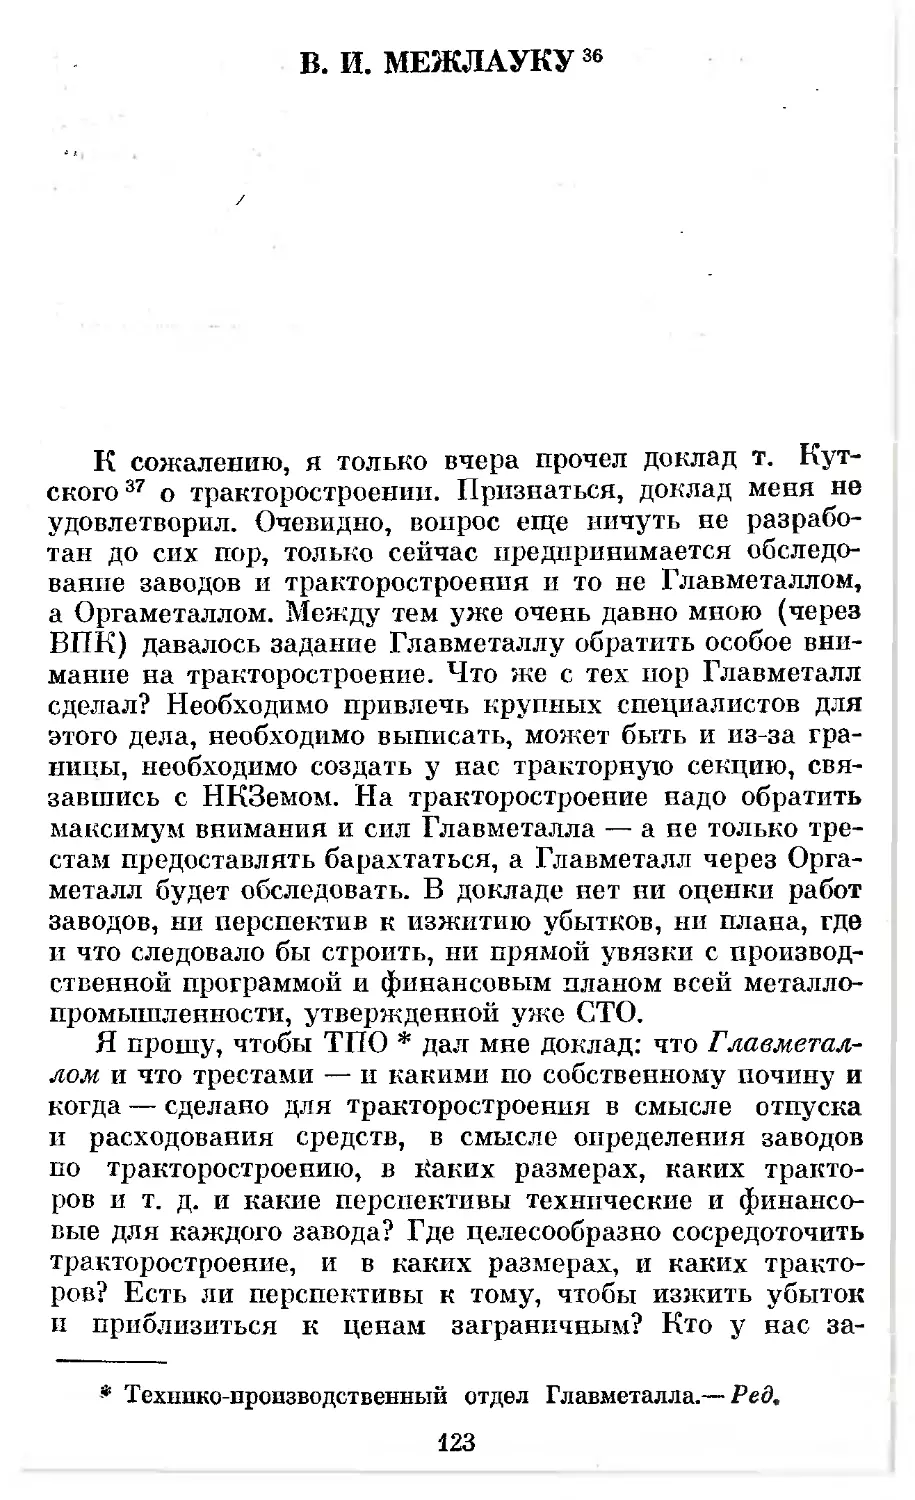 В. И. Межлауку. 23 декабря 1924 г